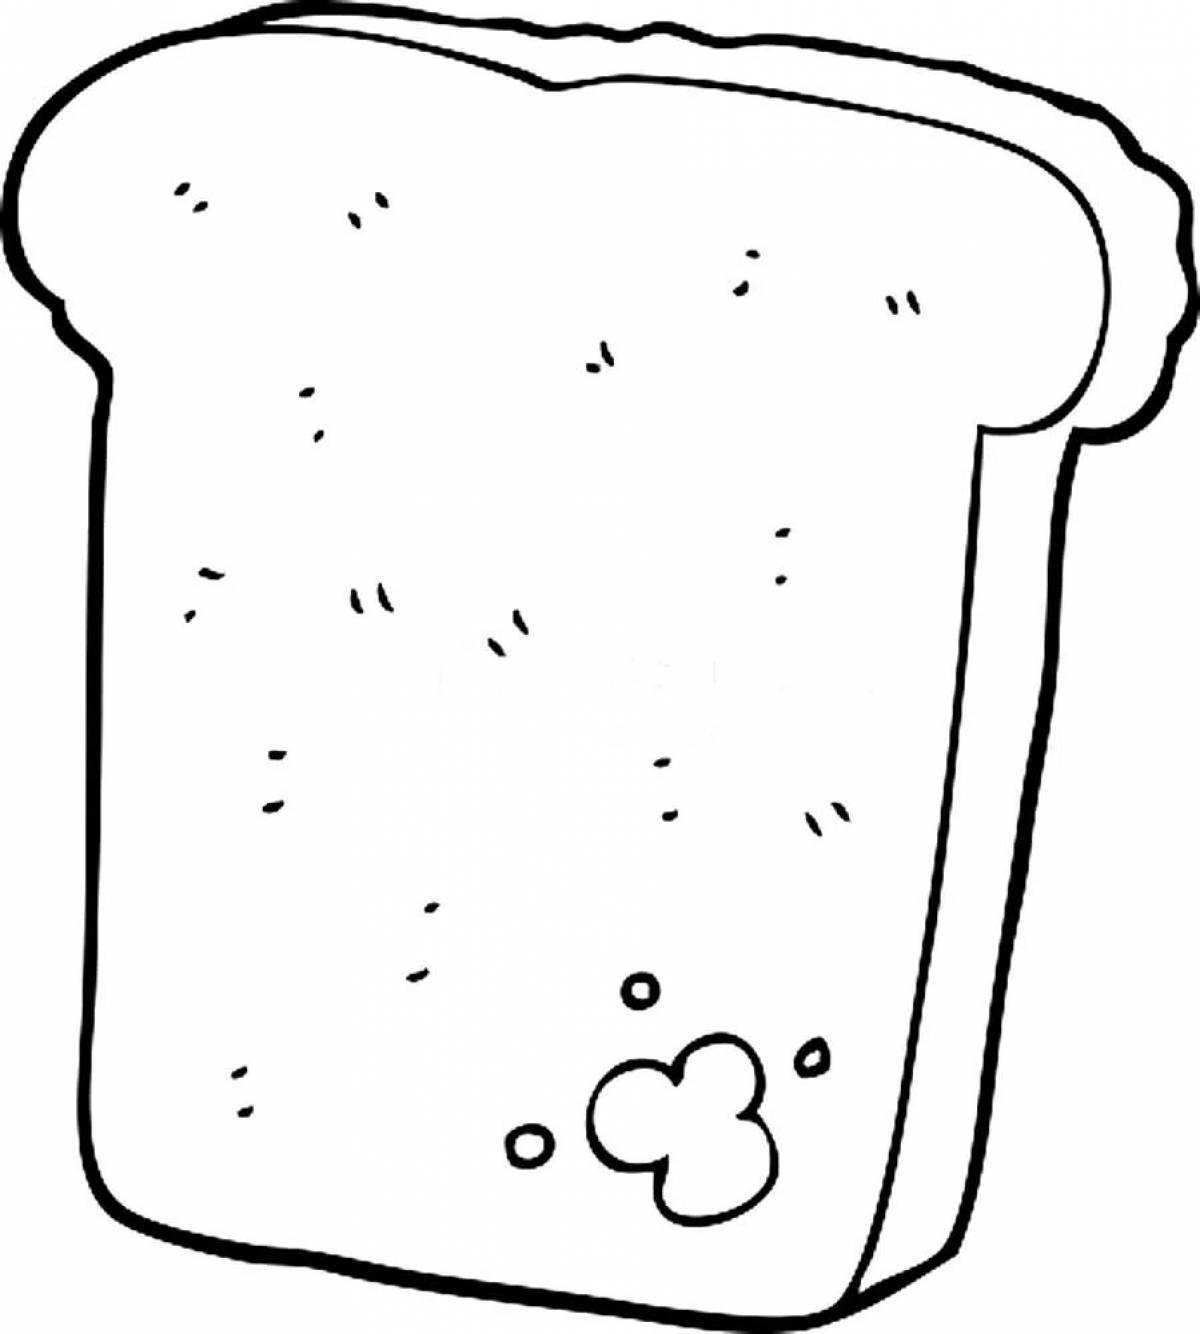 Масляно-слоистая раскраска кусочек хлеба